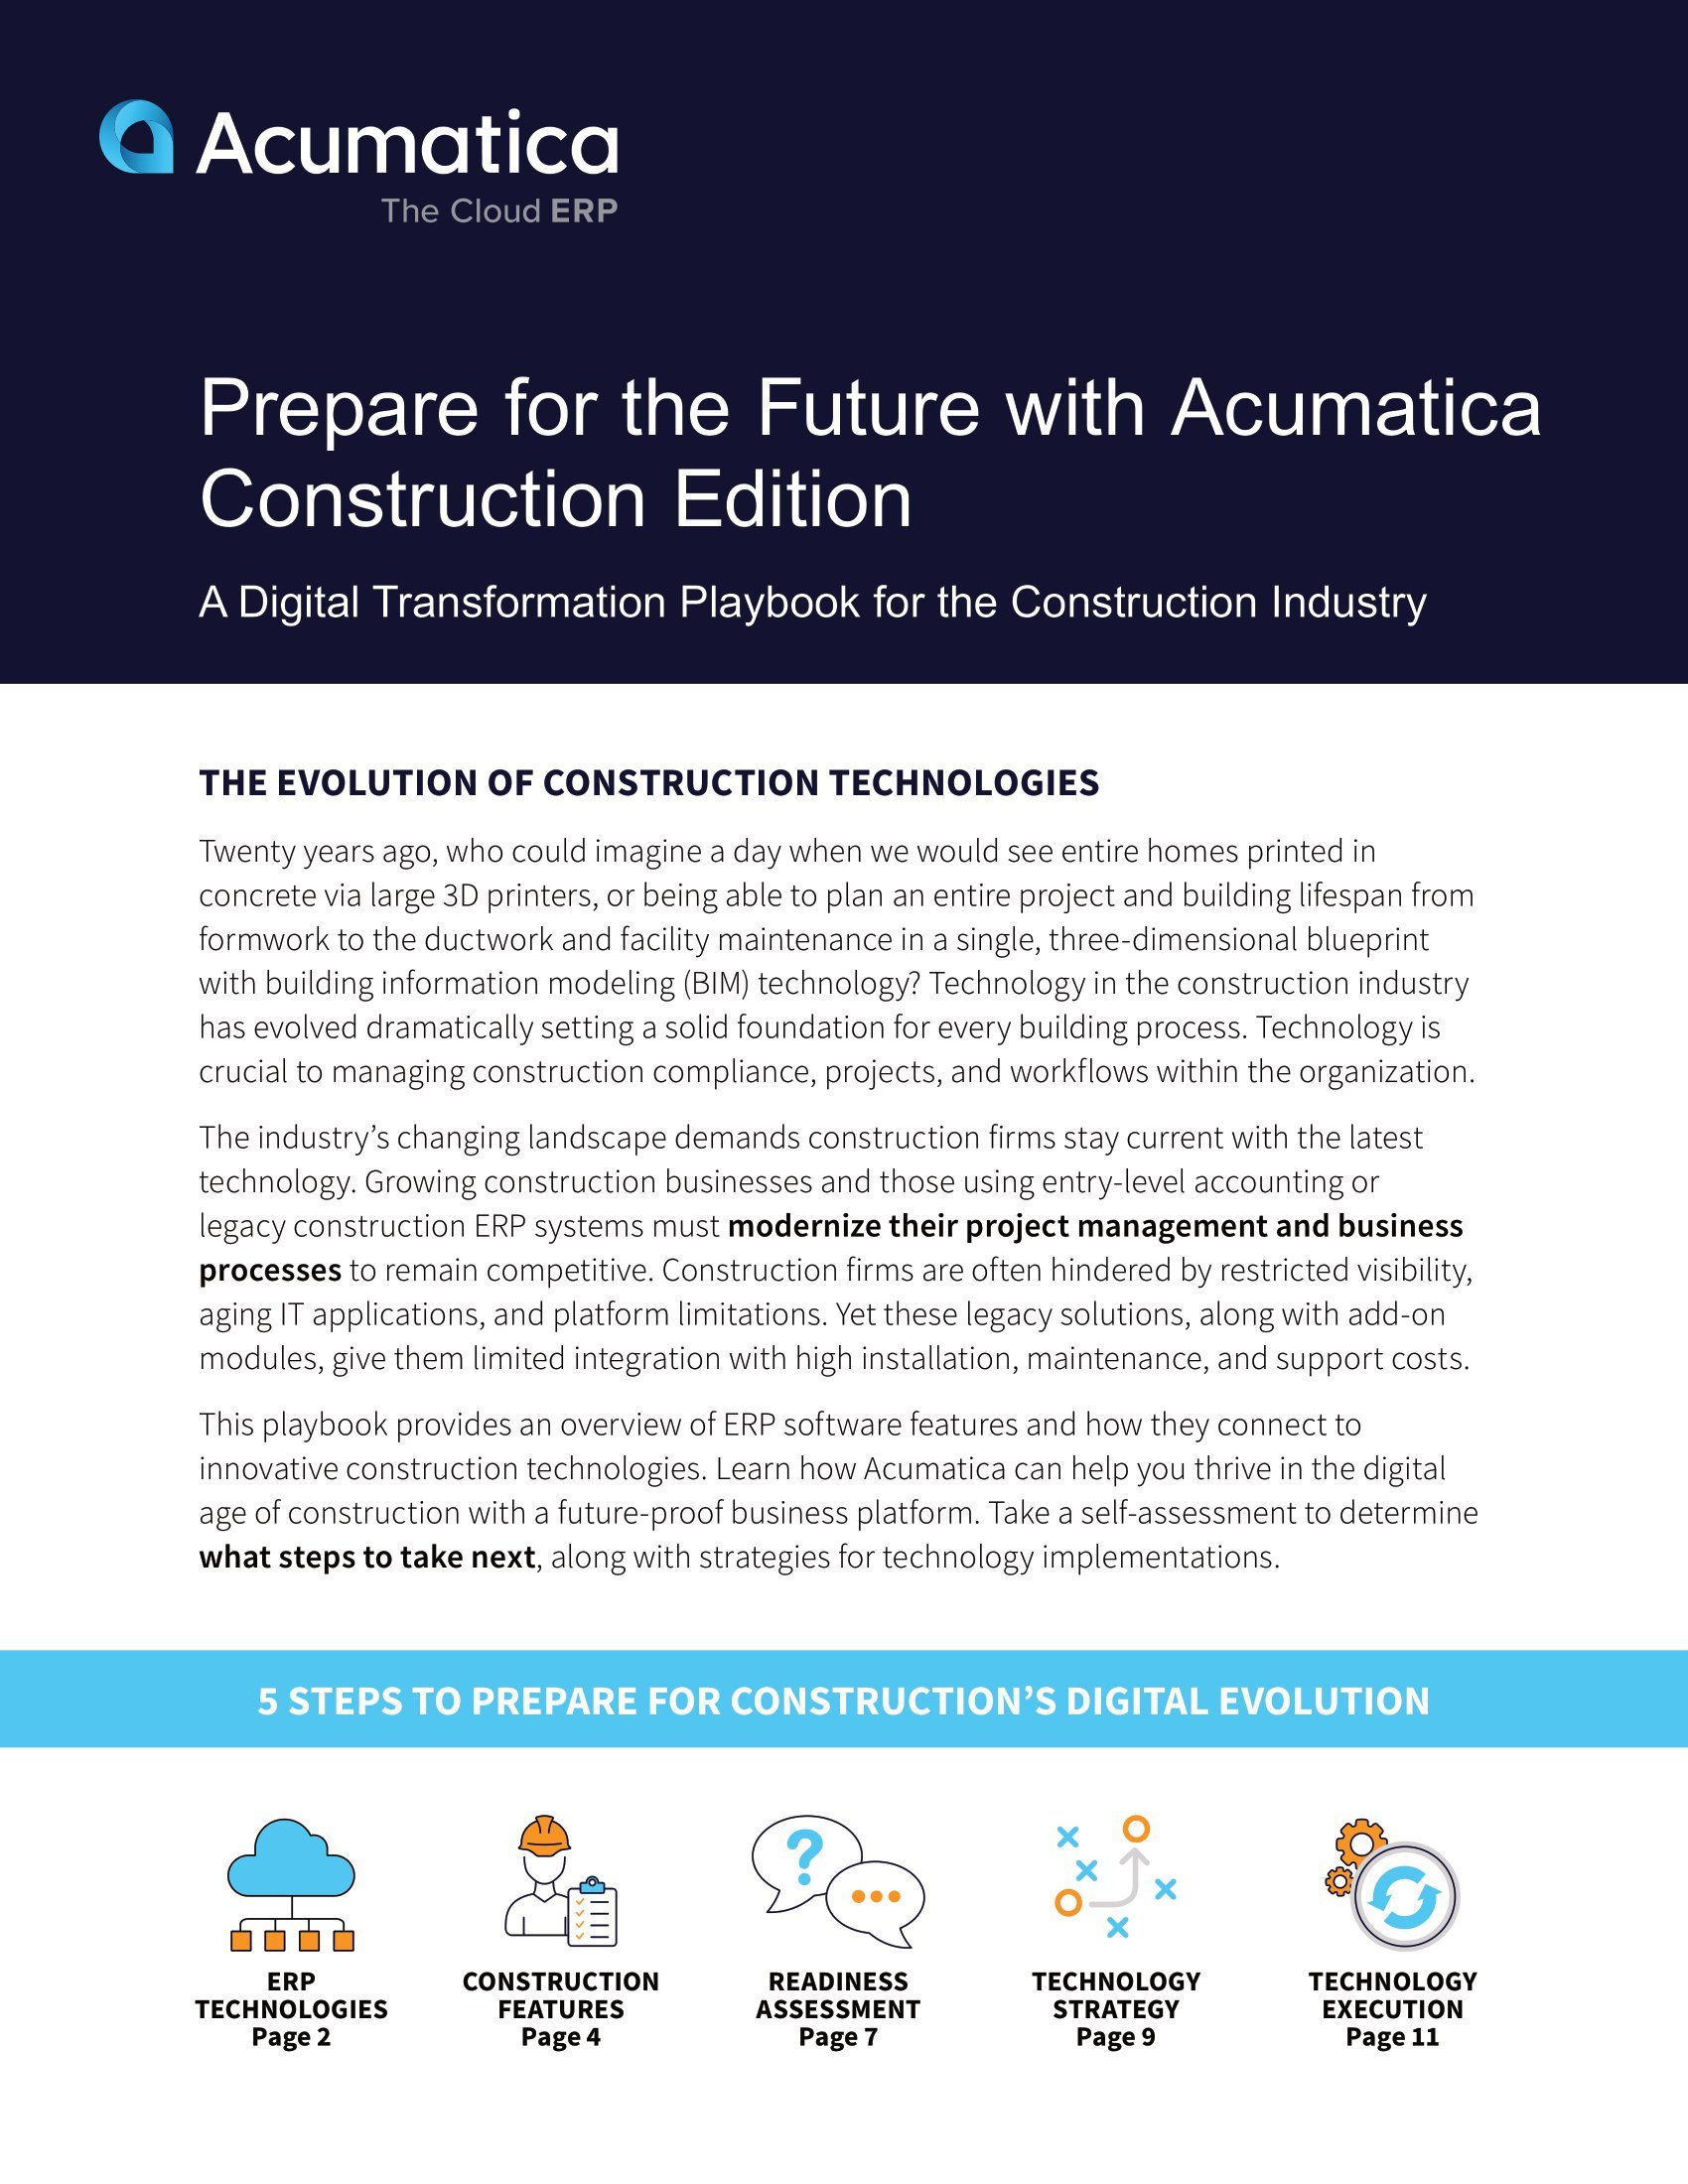 Préparez-vous à l’évolution de l’industrie de la construction avec une transformation numérique